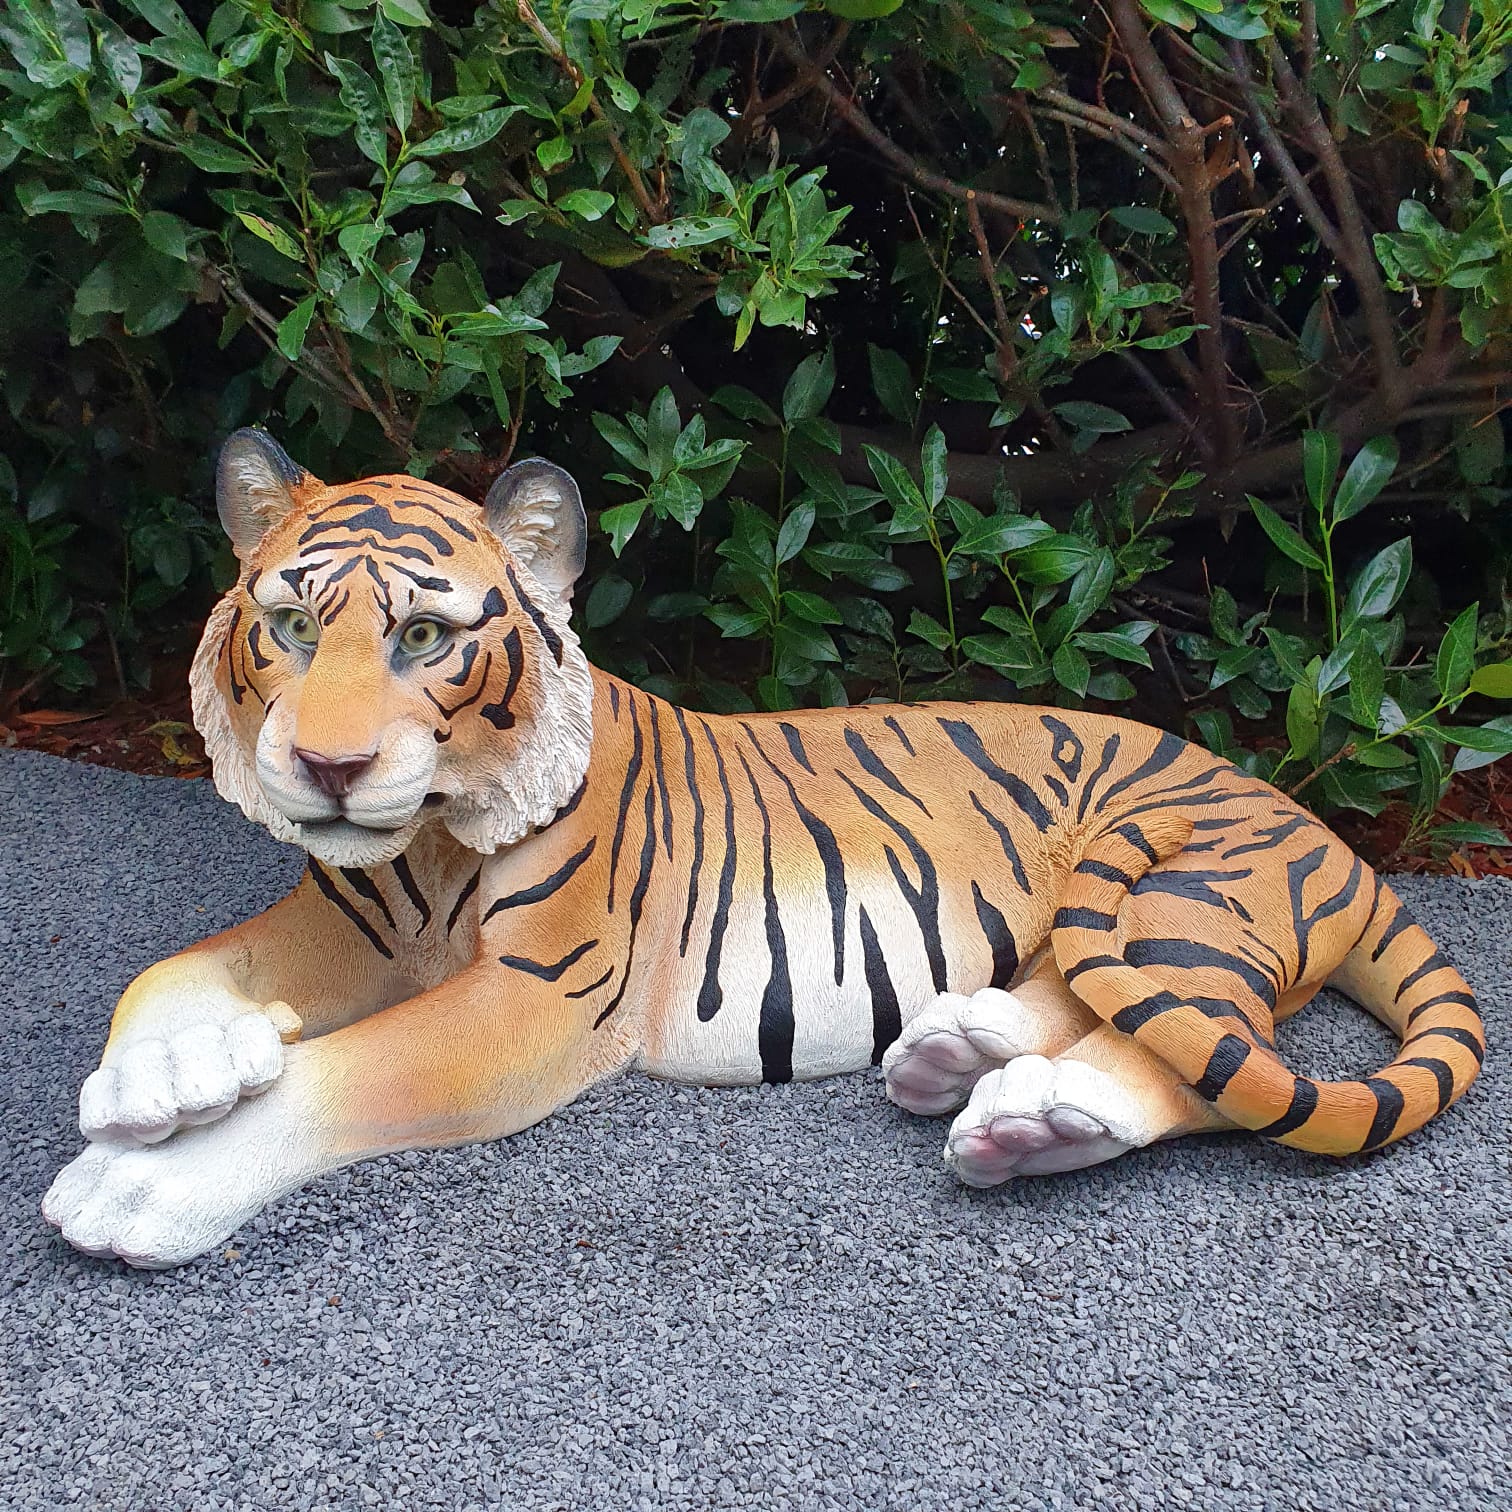 Gartenfigur großer liegende Tiger Figur 99 cm